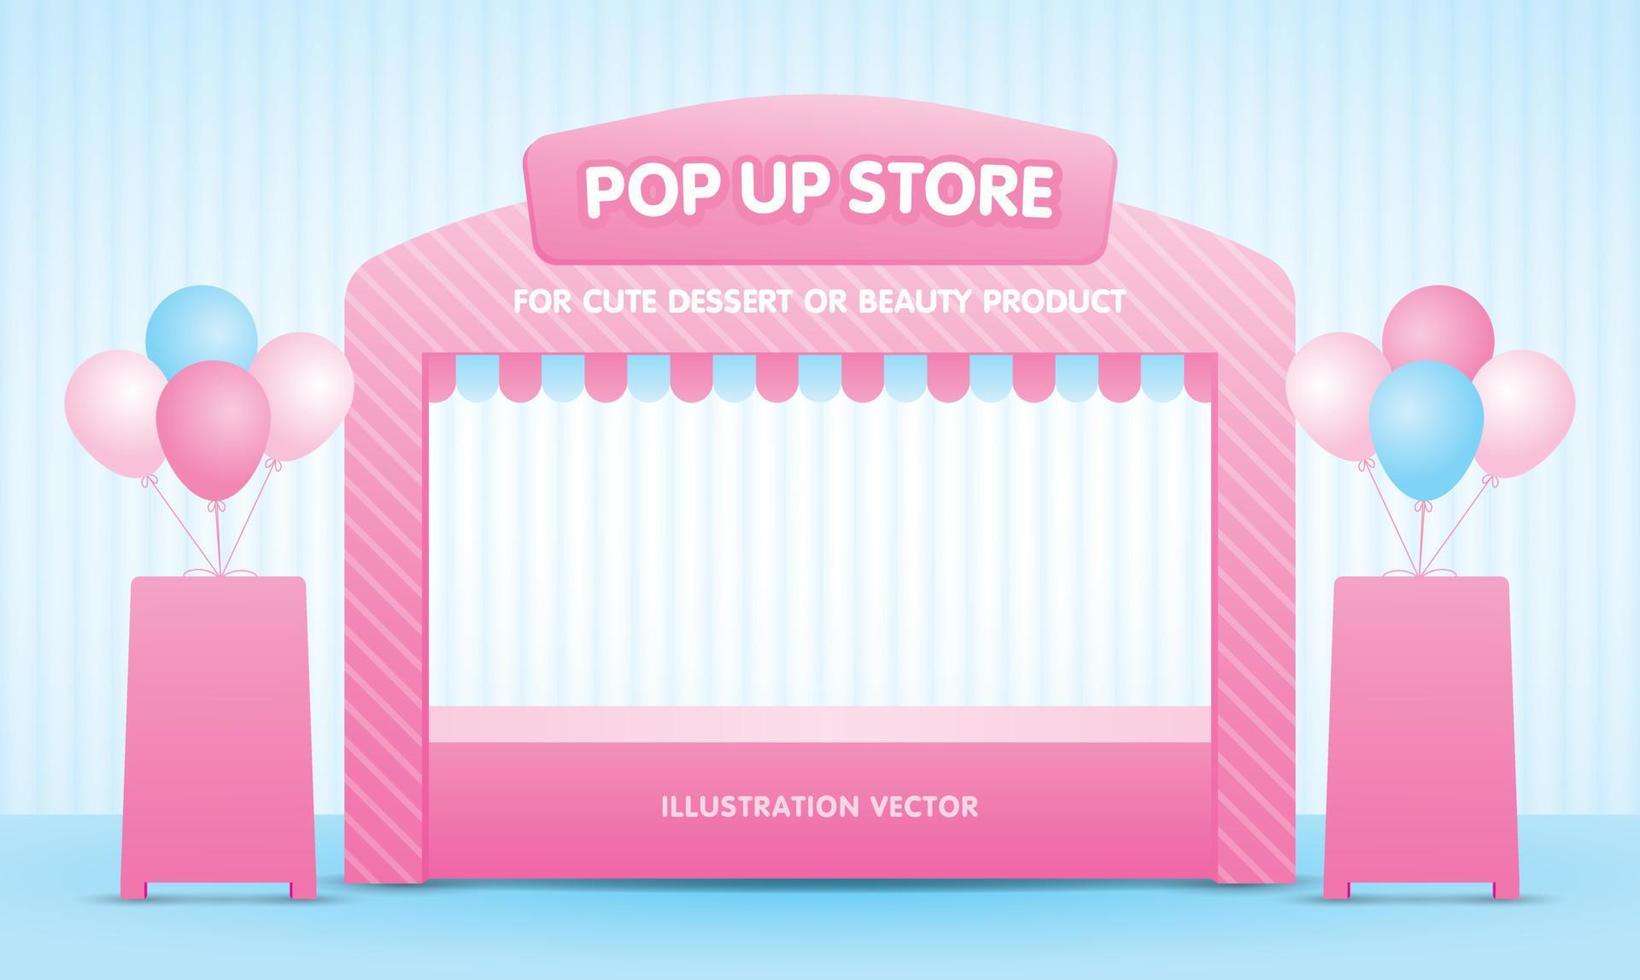 schattig meisjesachtig zoet roze pastel knal omhoog op te slaan 3d illustratie vector met uithangbord en ballonnen grafisch element